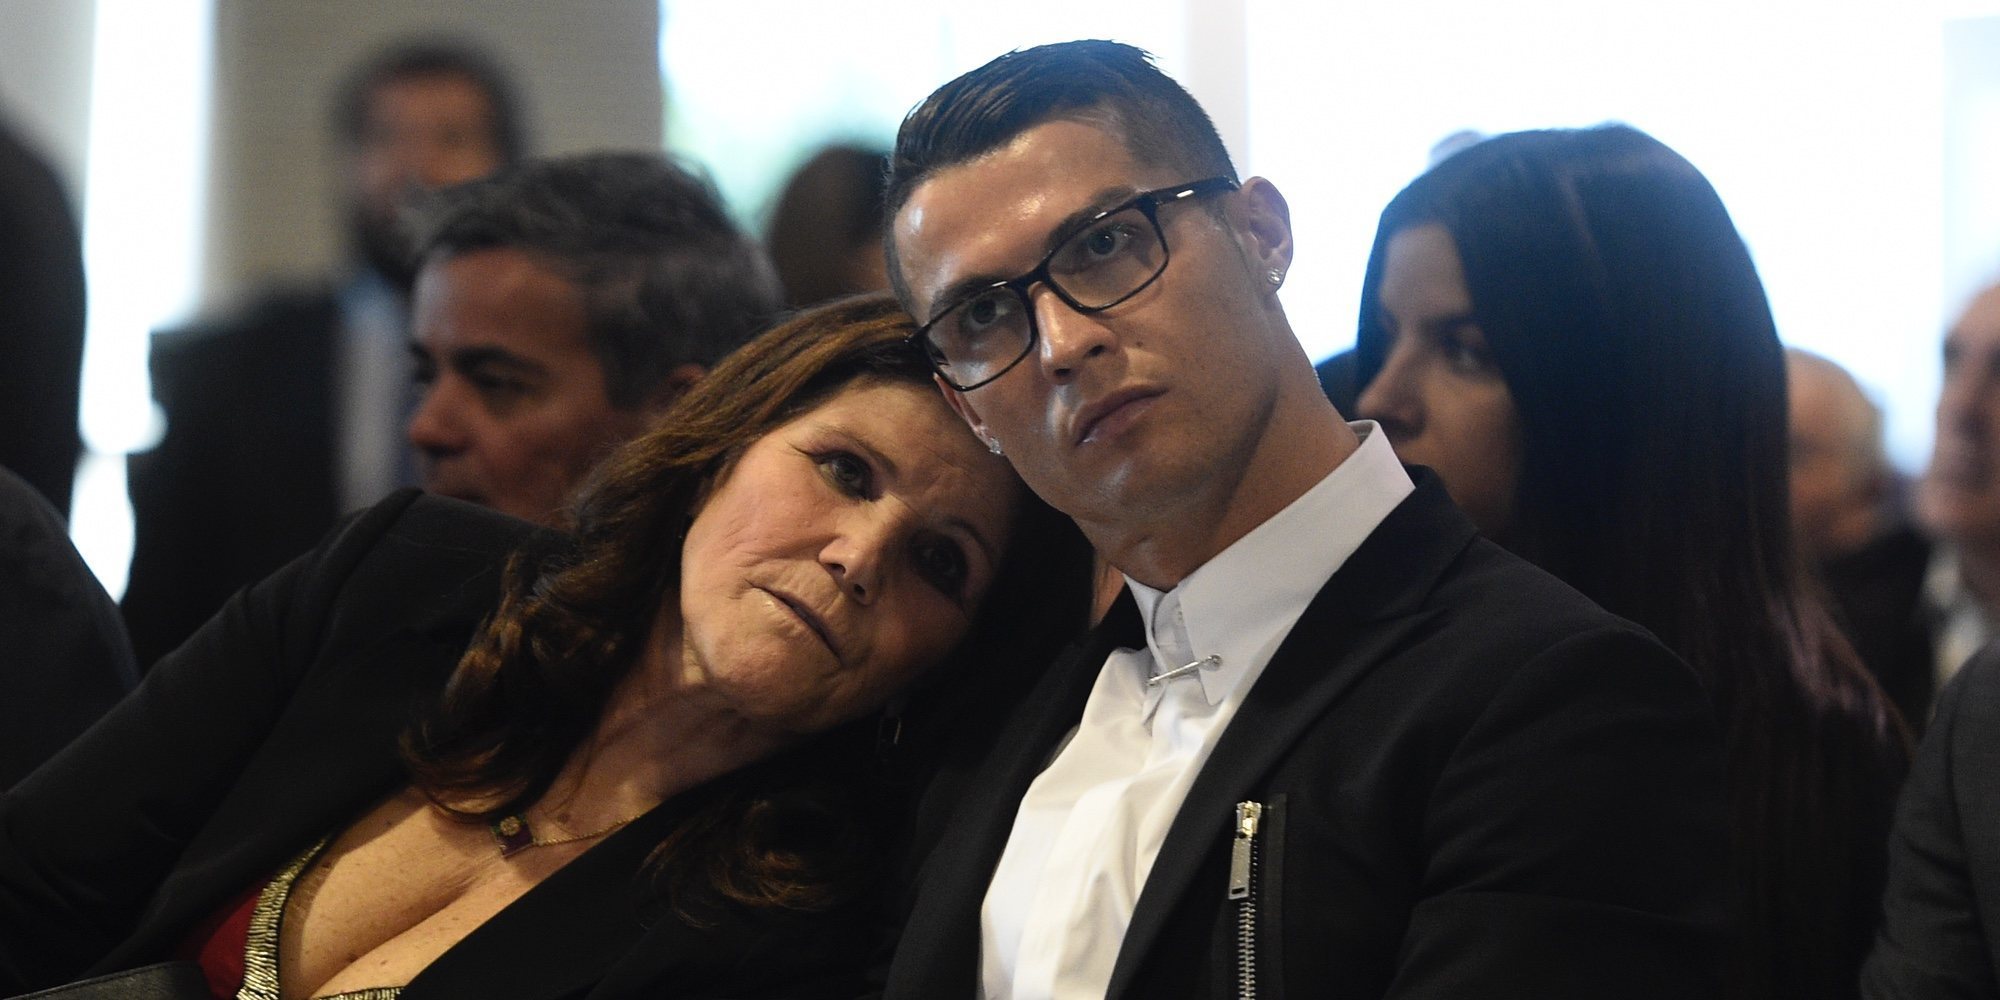 Primeras palabras de Cristiano Ronaldo después de que su madre sufriera un ictus: "Está actualmente estable"